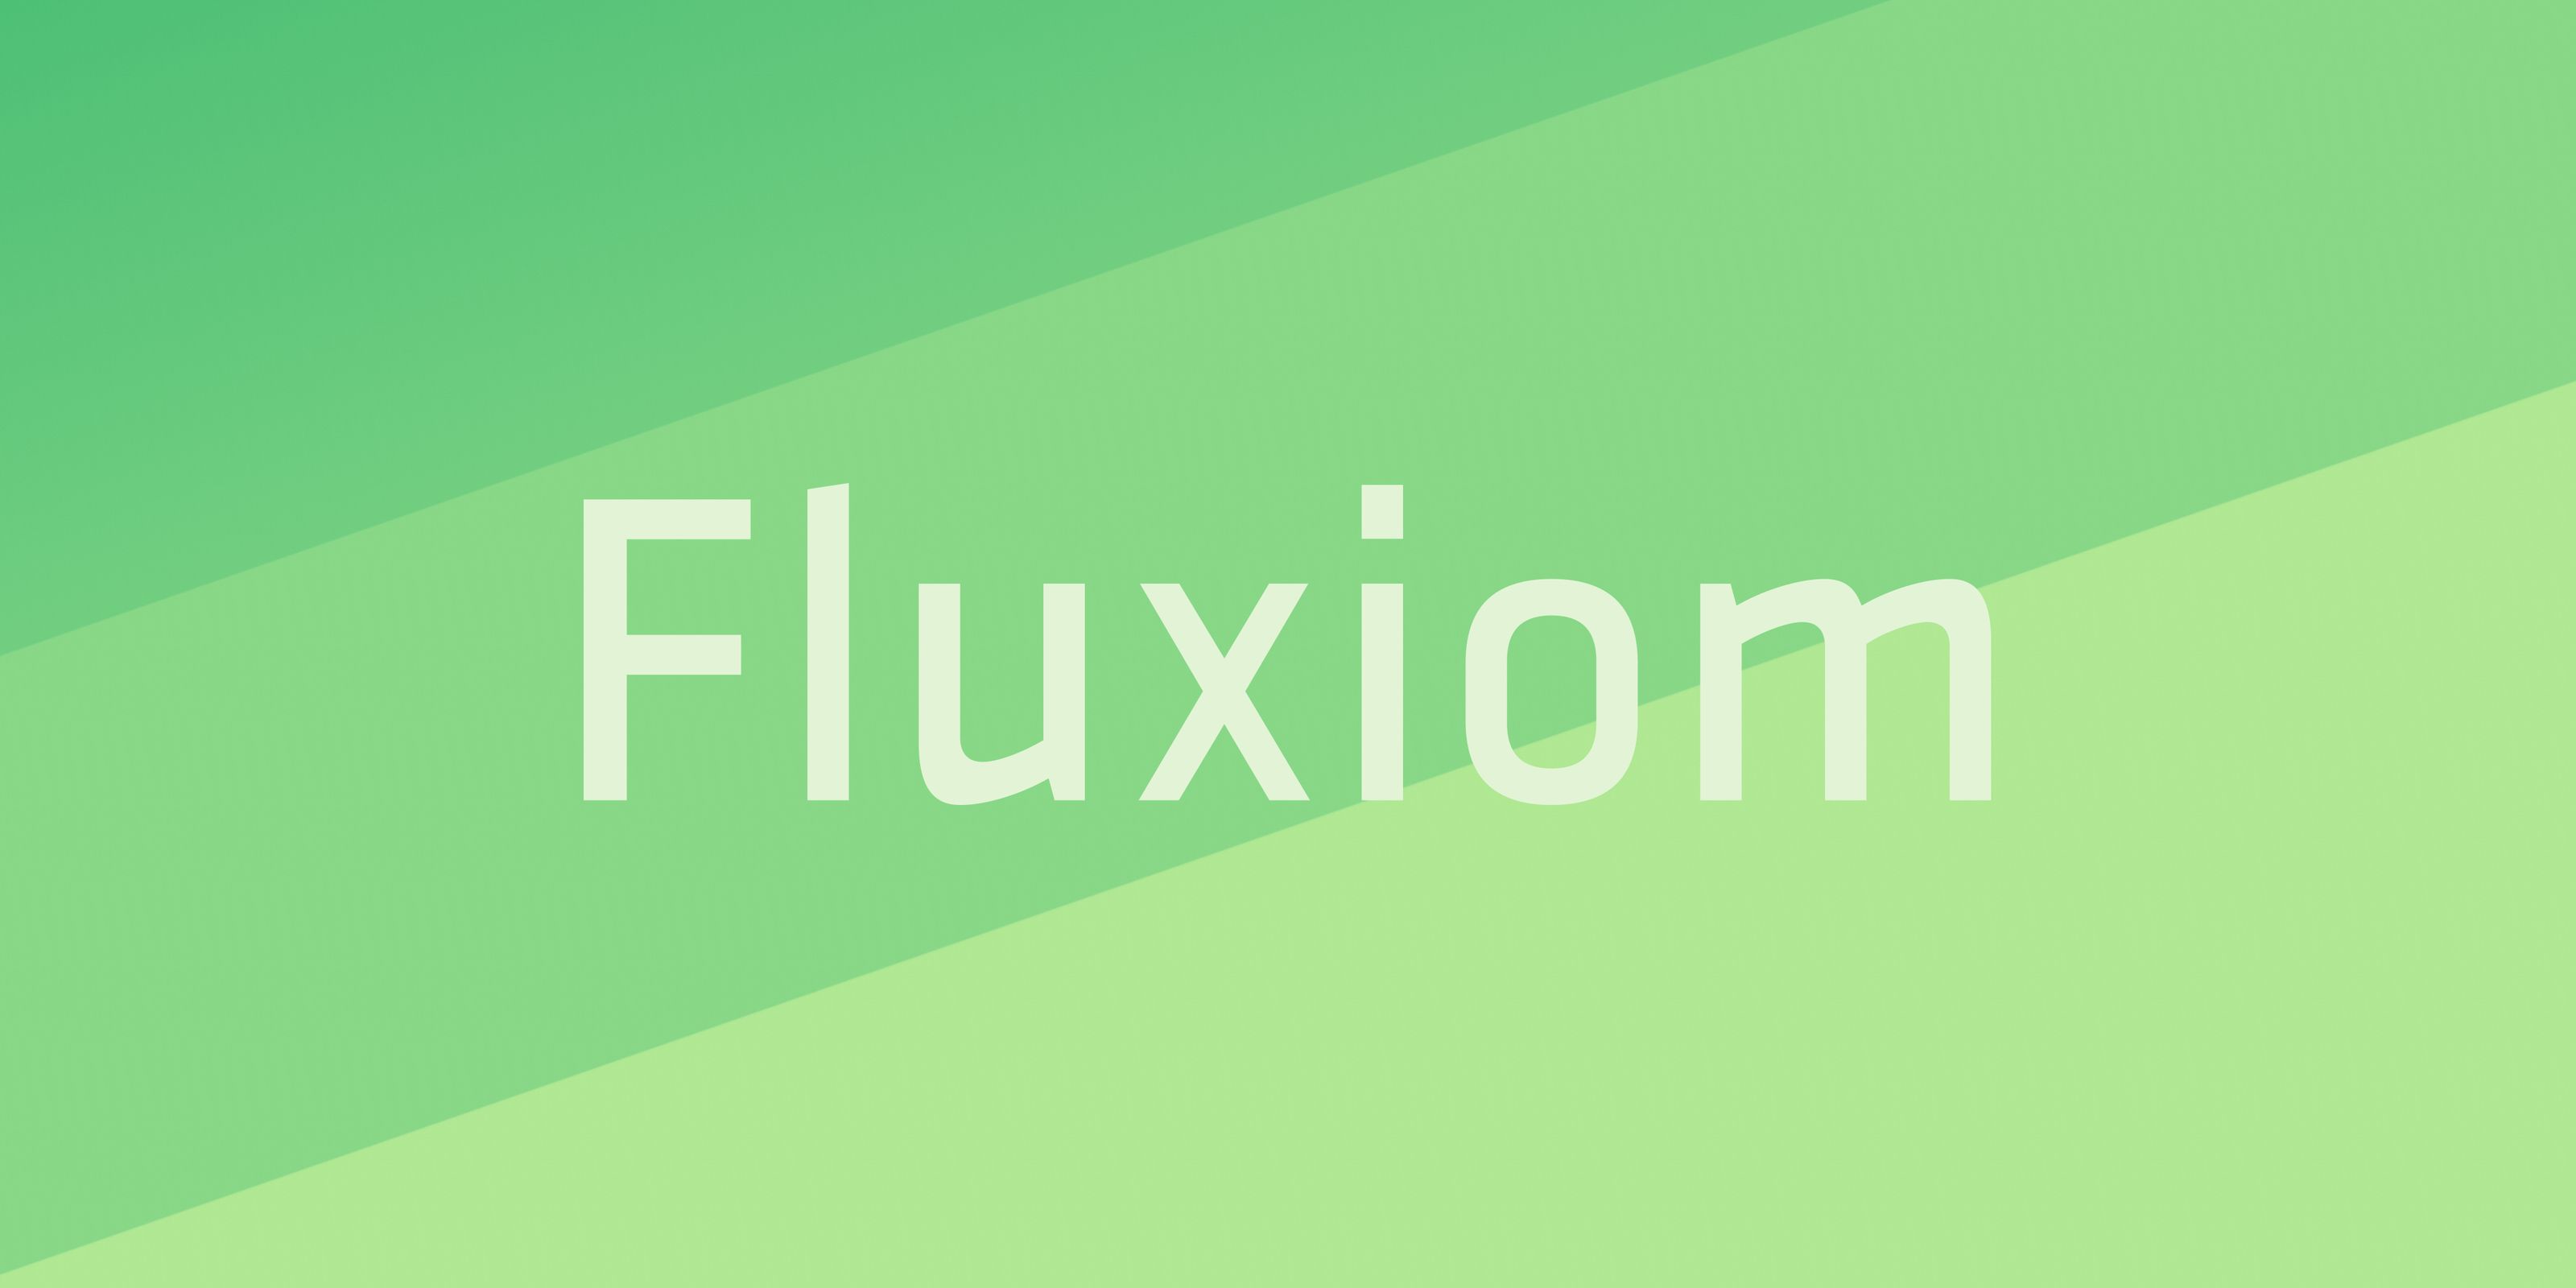 www.fluxiom.com